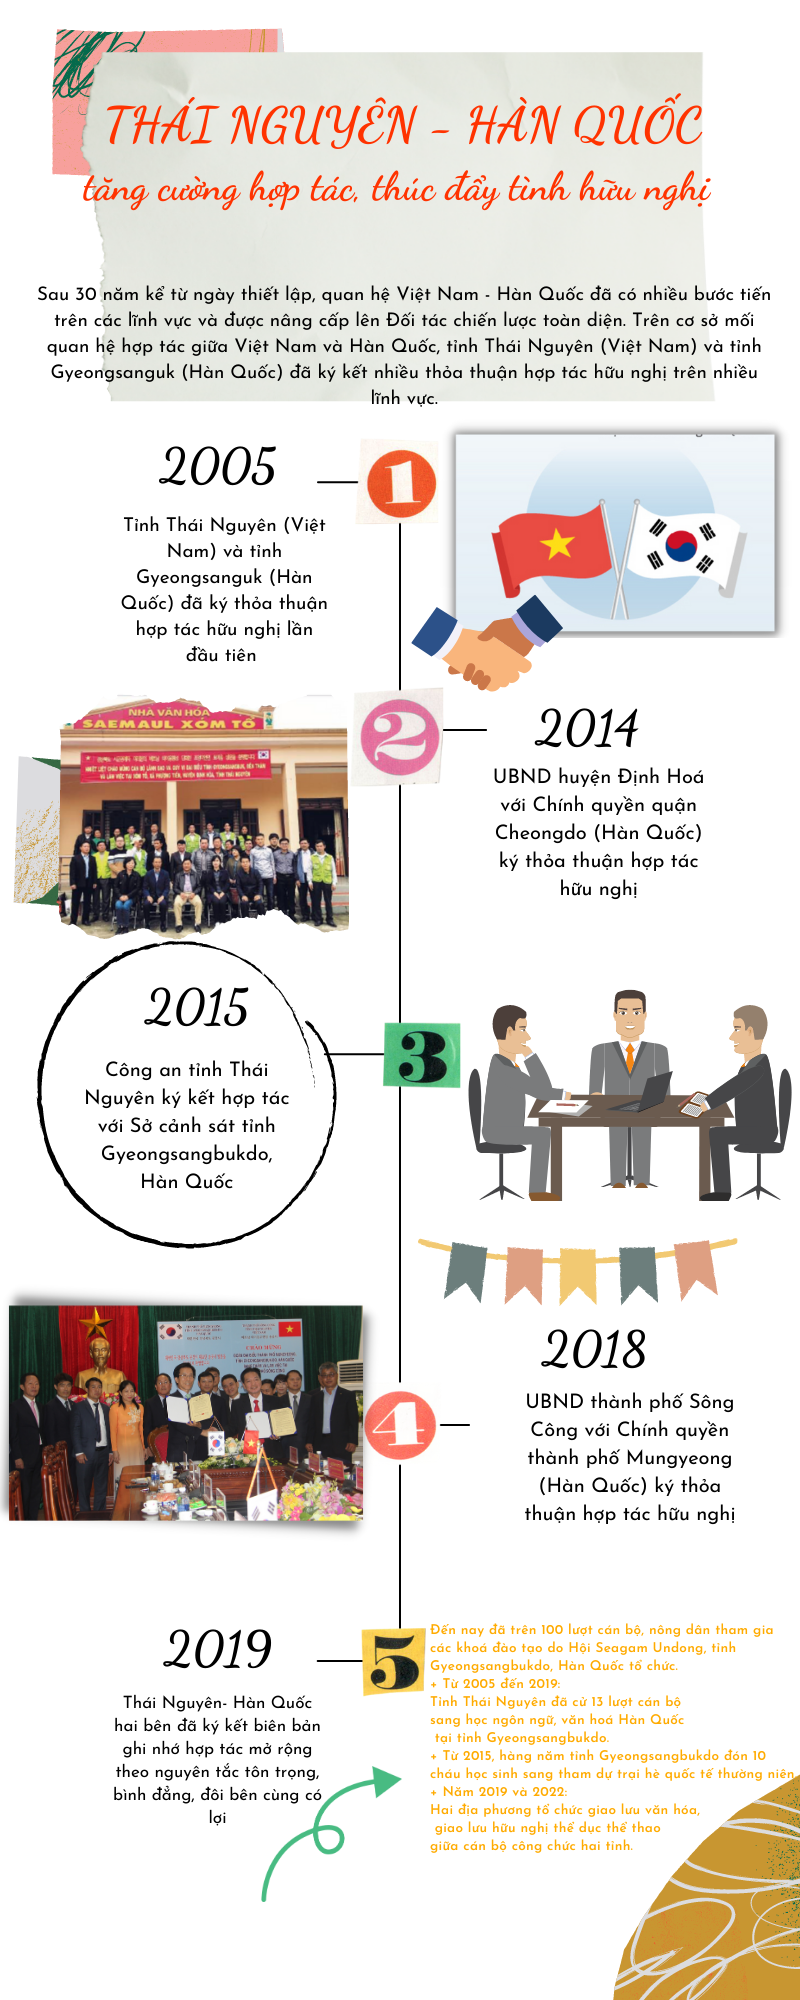 [Infographic] Thái Nguyên - Hàn Quốc: Tăng cường hợp tác, thúc đẩy tình hữu nghị